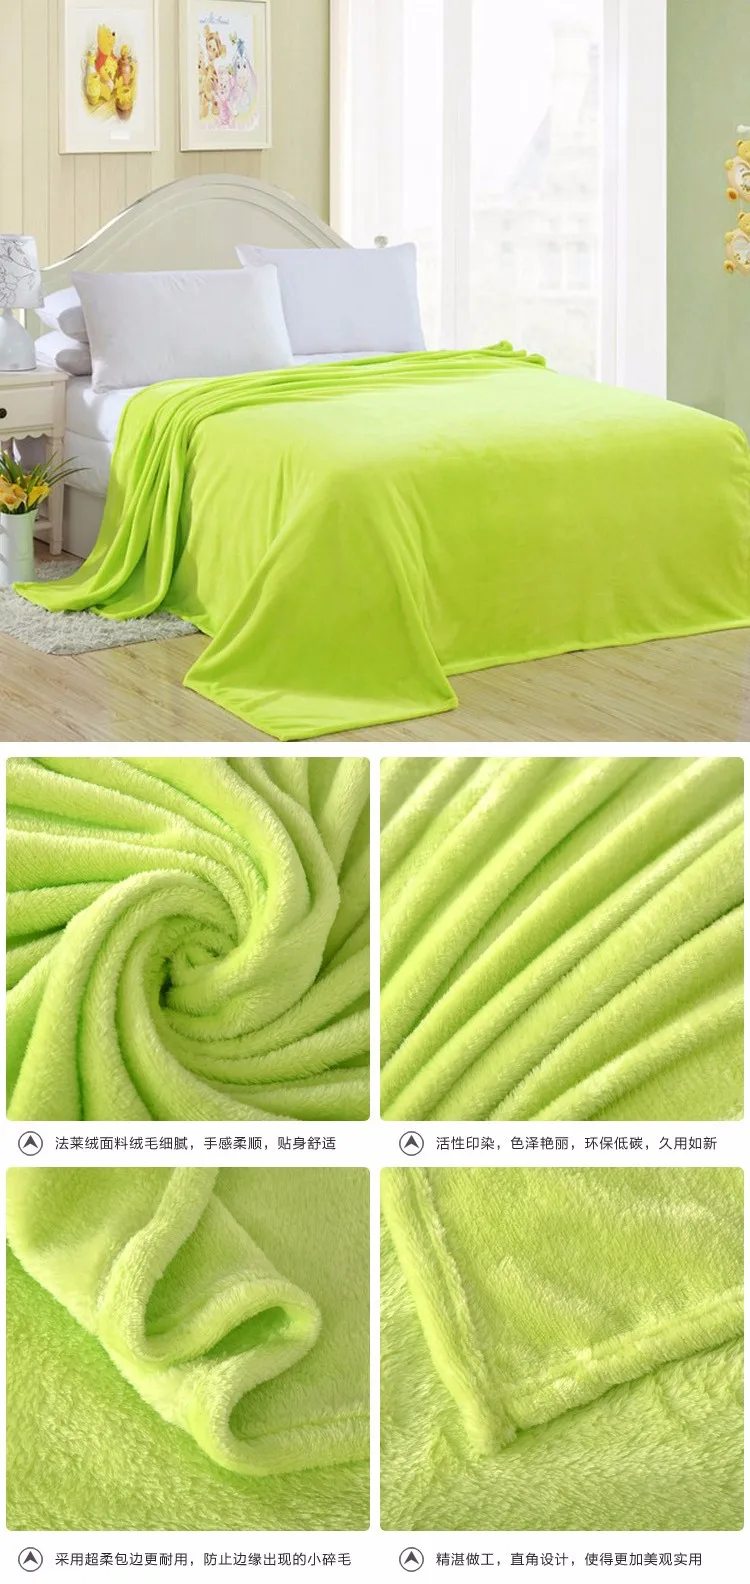 Фланелевое однотонное одеяло для дивана, постельные принадлежности, мягкая зимняя простыня в клетку, 150*200 см, 180*200 см, 200*230 см